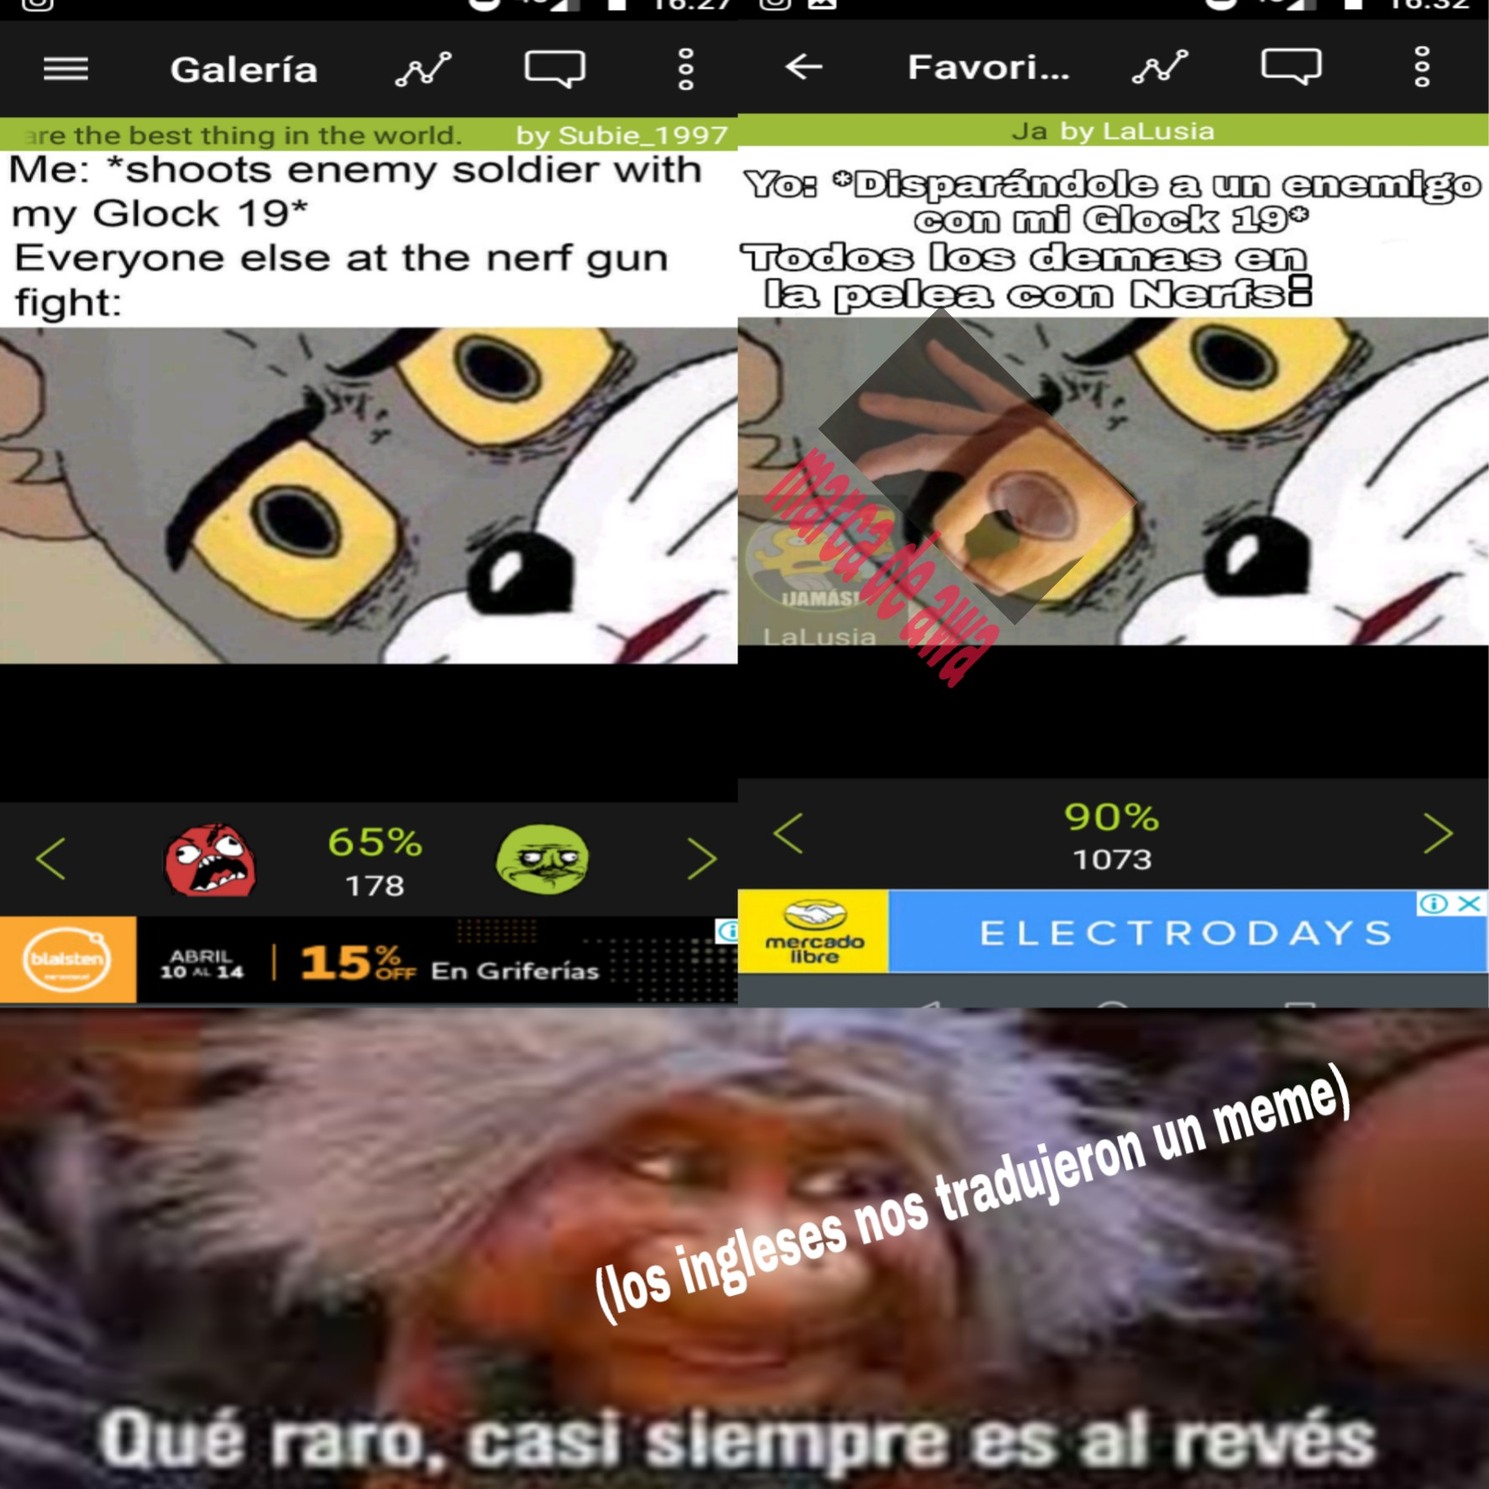 El meme de arriba a ña izquierda es un meme del server español traducido